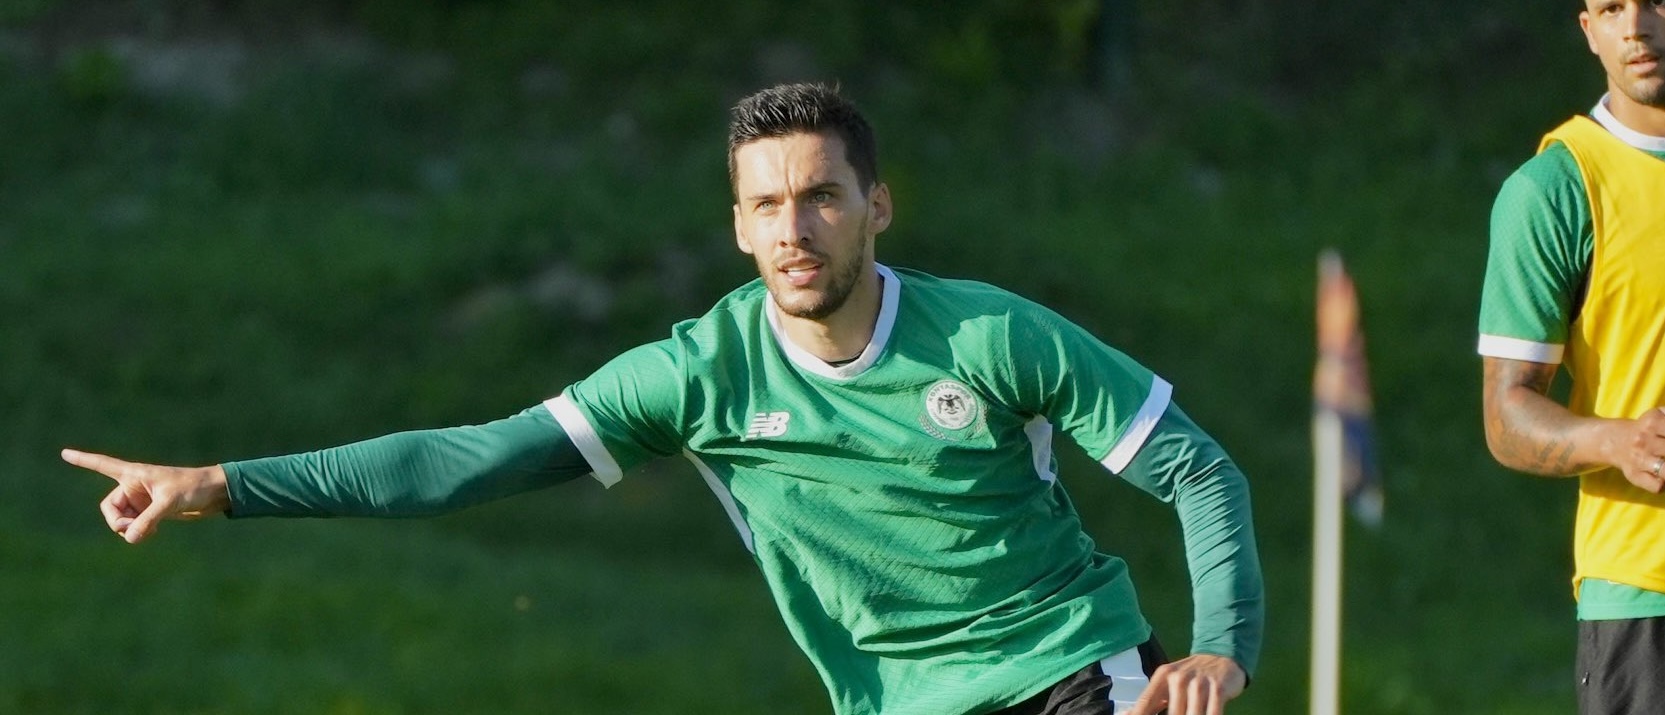 Konyaspor’un yeni transferi Umut Nayir ilk antrenmanına çıktı!